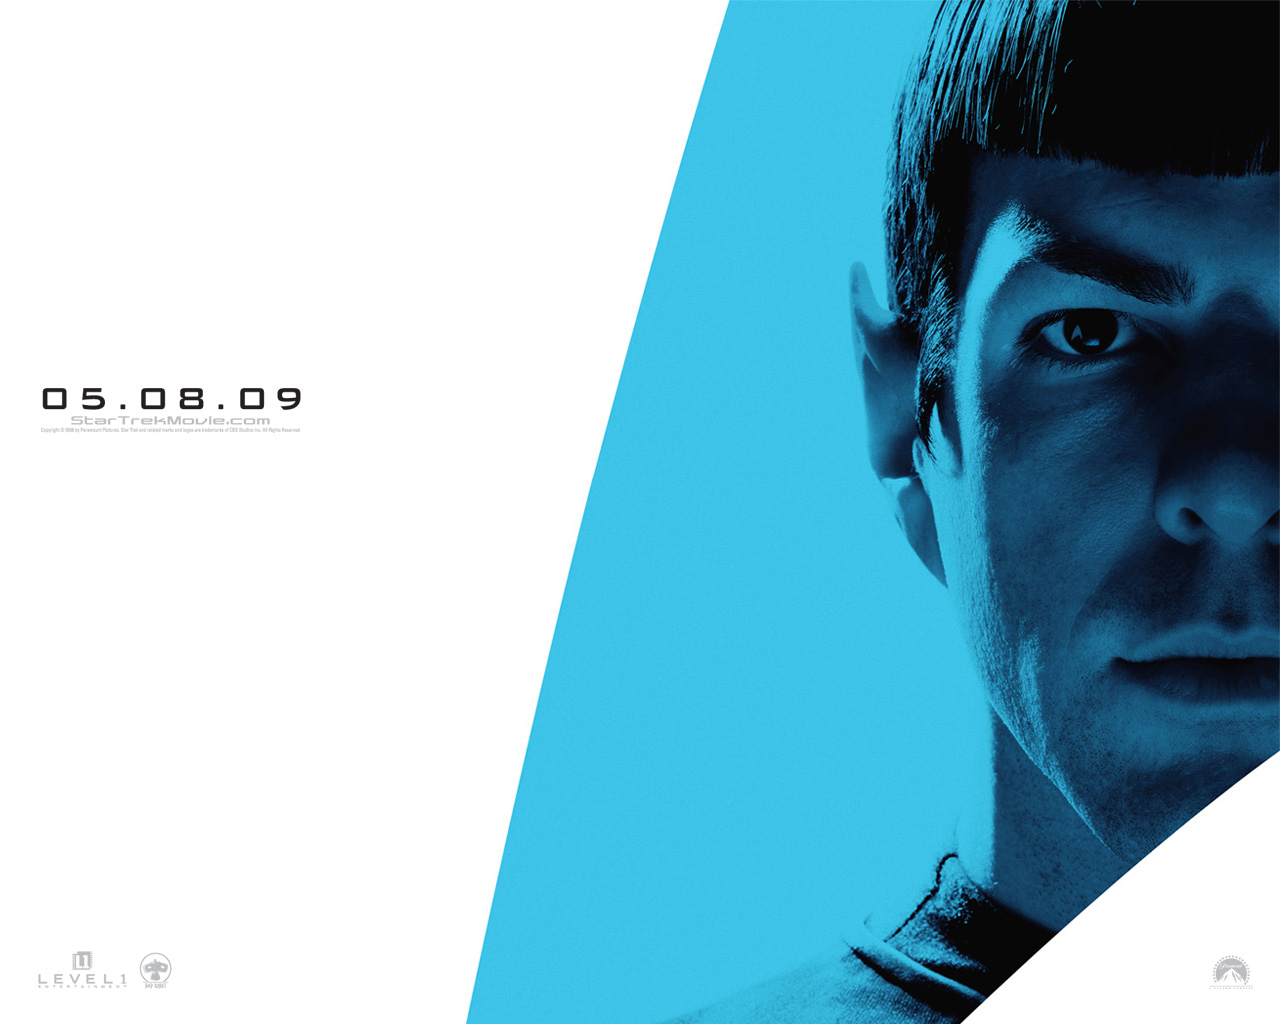 Download full size Star Trek 2009 wallpaper / Movies / 1280x1024